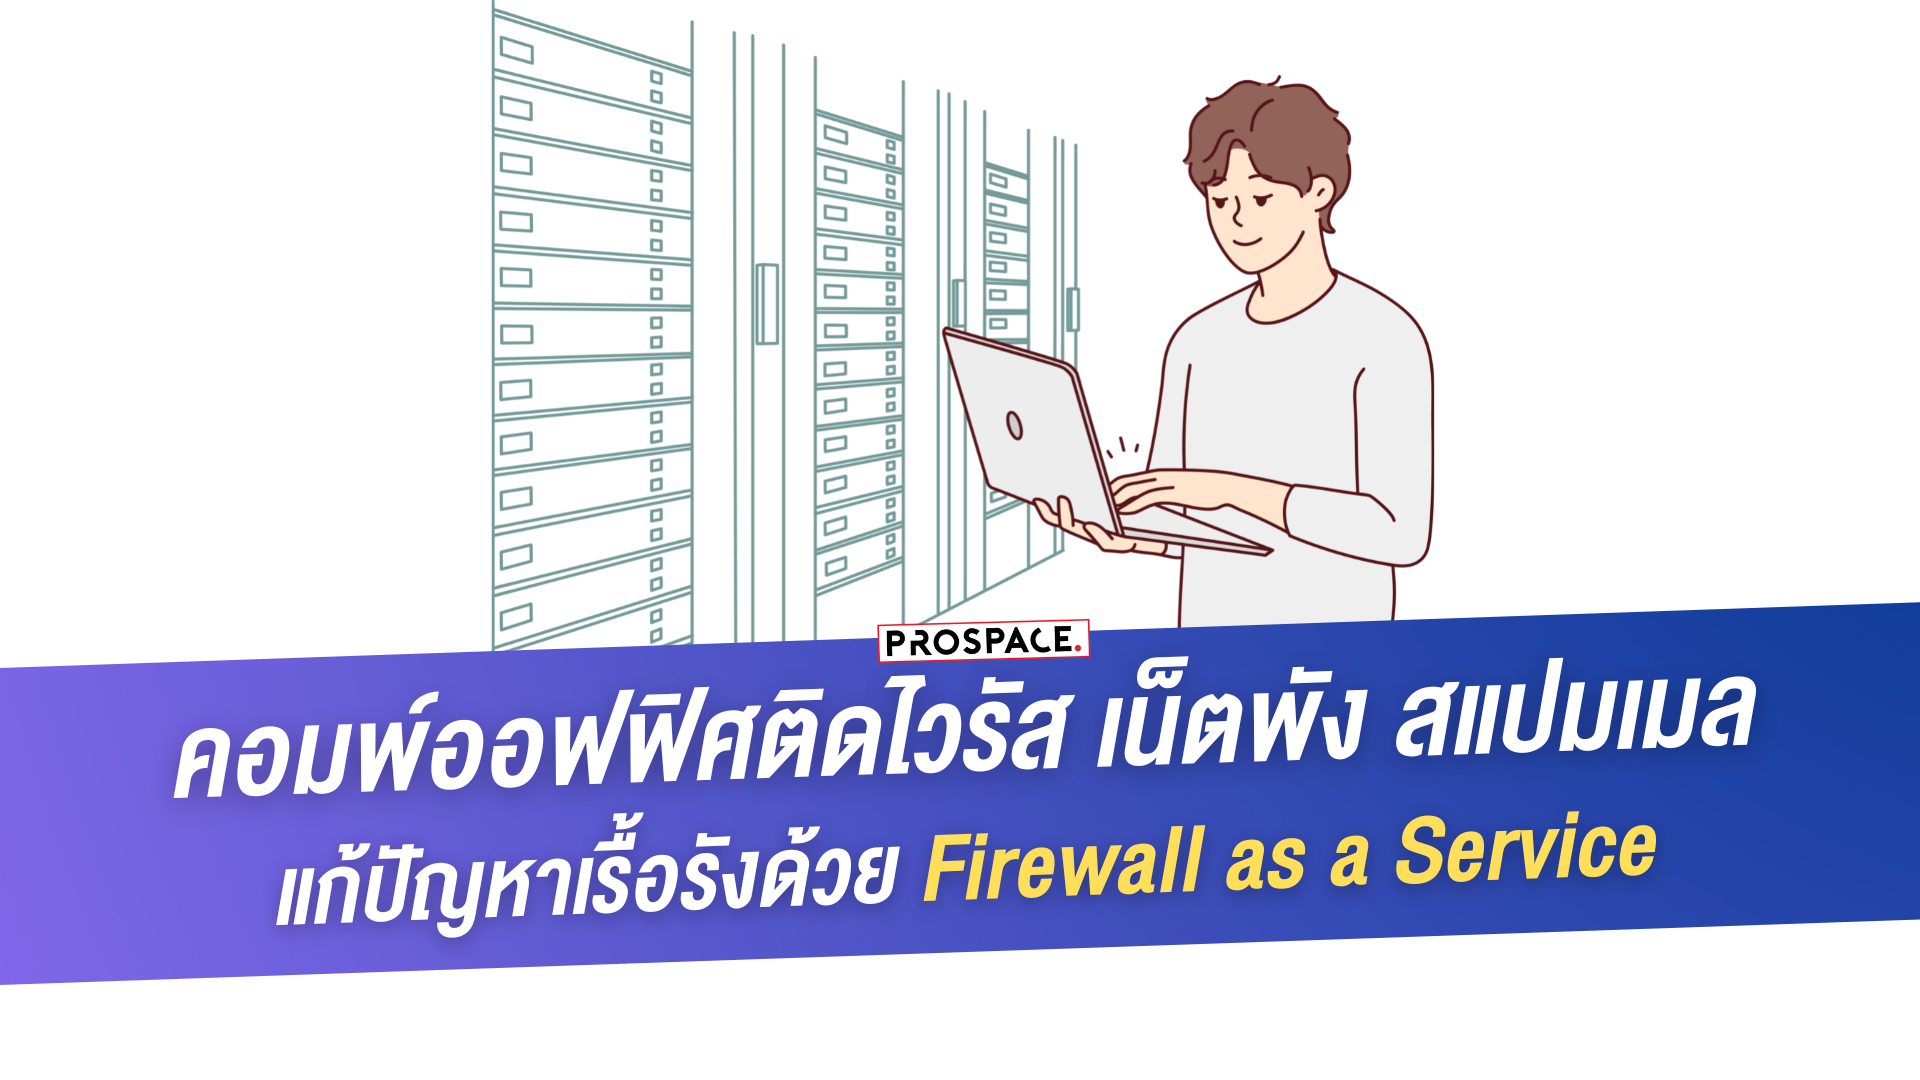 Firewall as a Service